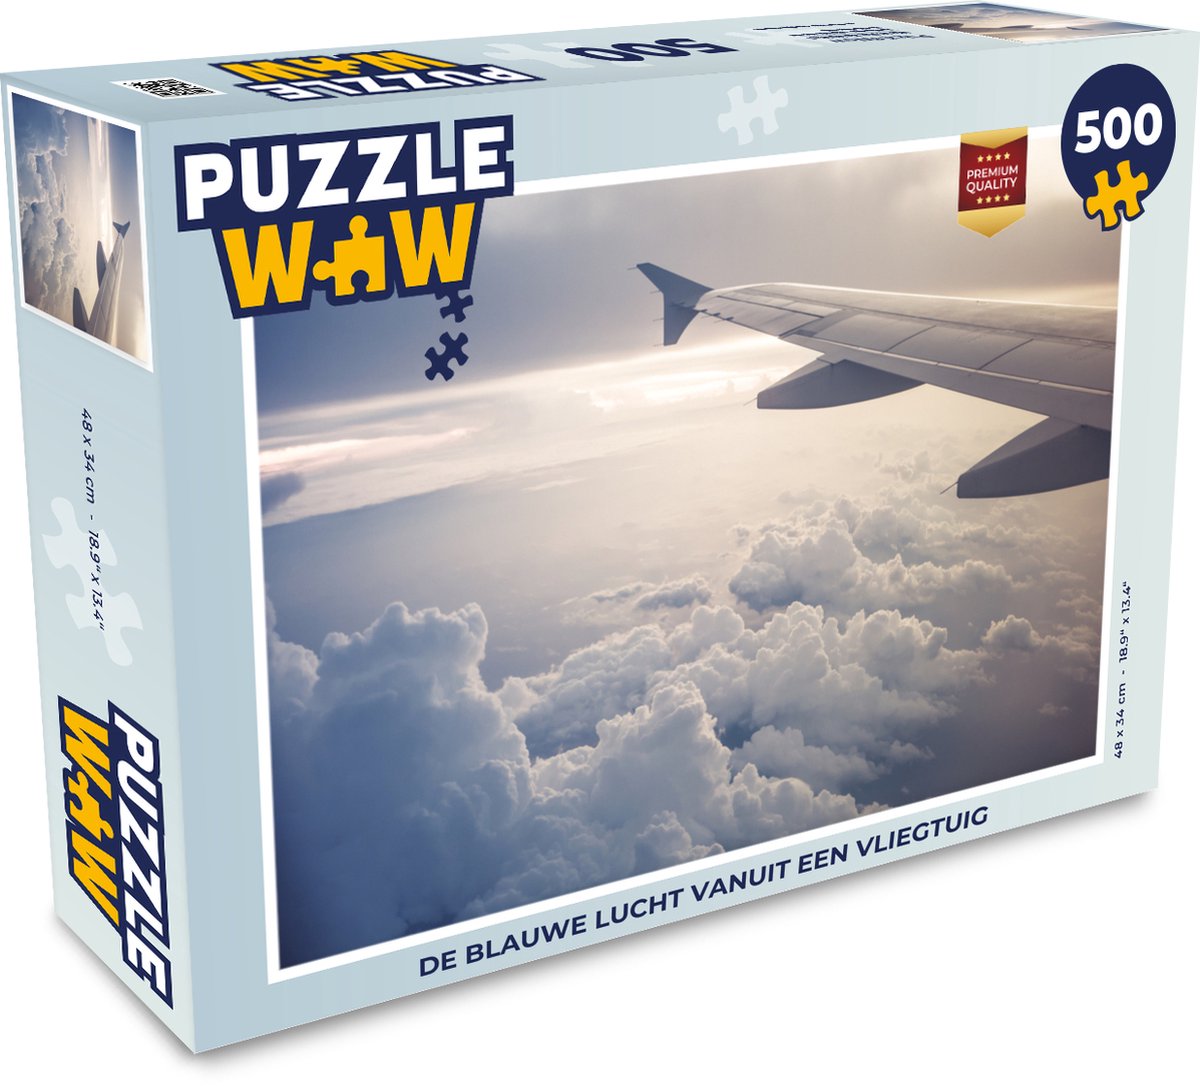 Afbeelding van product Puzzel 500 stukjes Vliegtuig - De blauwe lucht vanuit een vliegtuig - PuzzleWow heeft +100000 puzzels